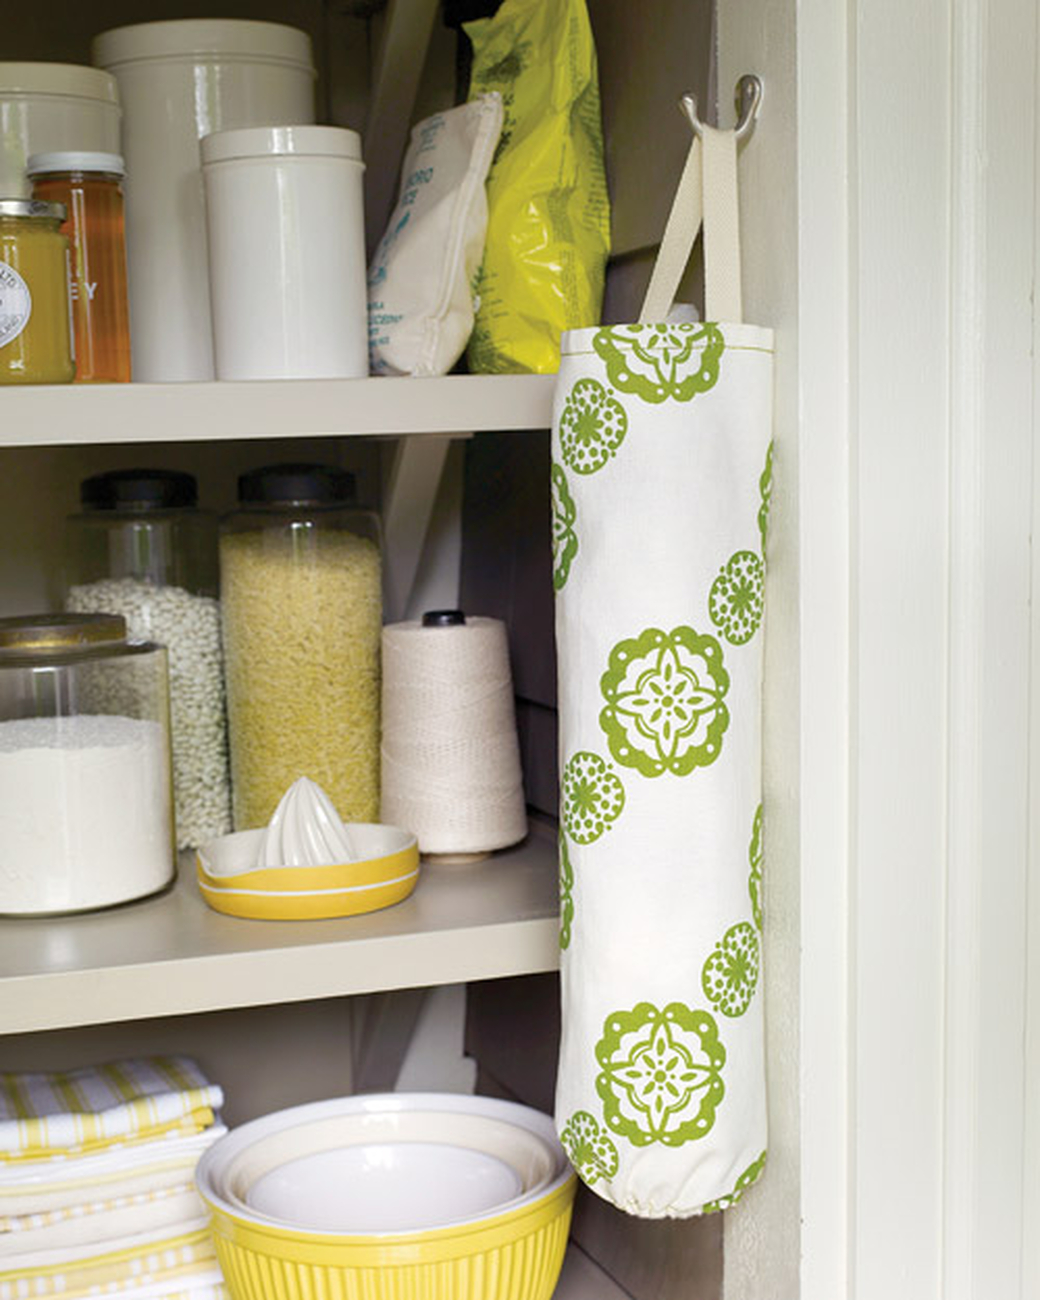 Обустройство кладовой: холщовый мешок для разных мелочей на вашей кухне, сшитый своими руками